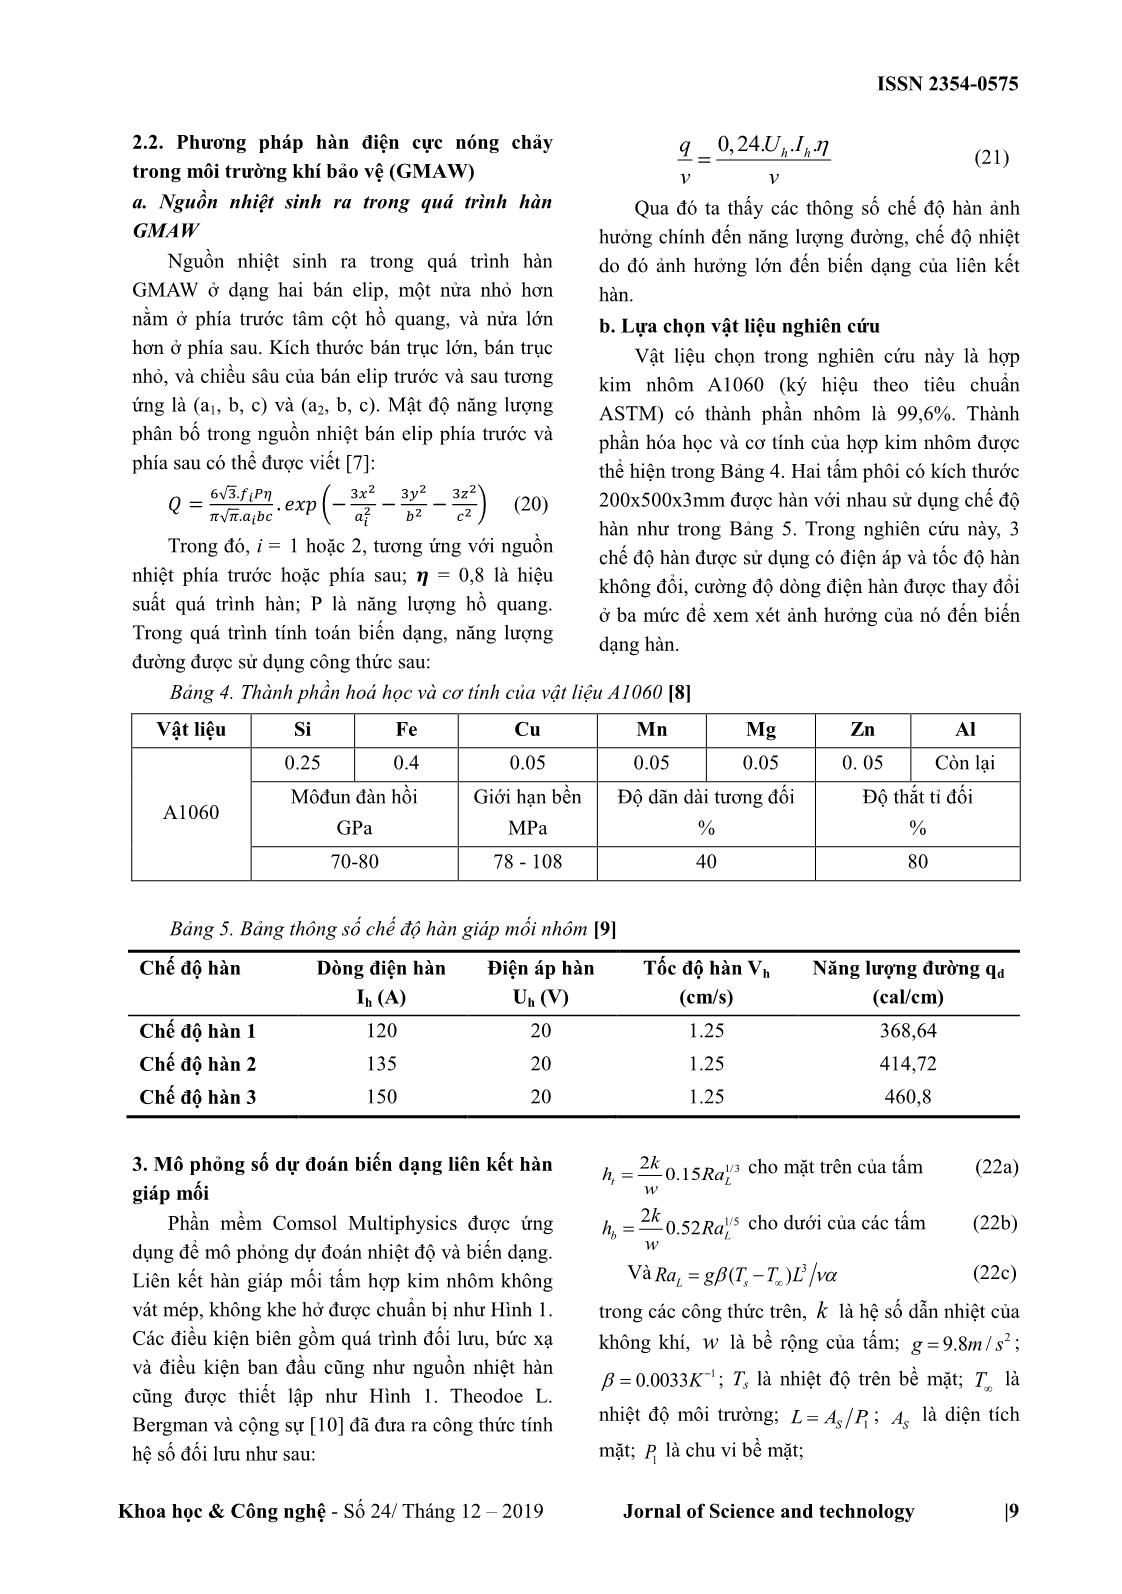 Mô phỏng và tính toán biến dạng của liên kết hàn giáp mối hợp kim nhôm trang 3